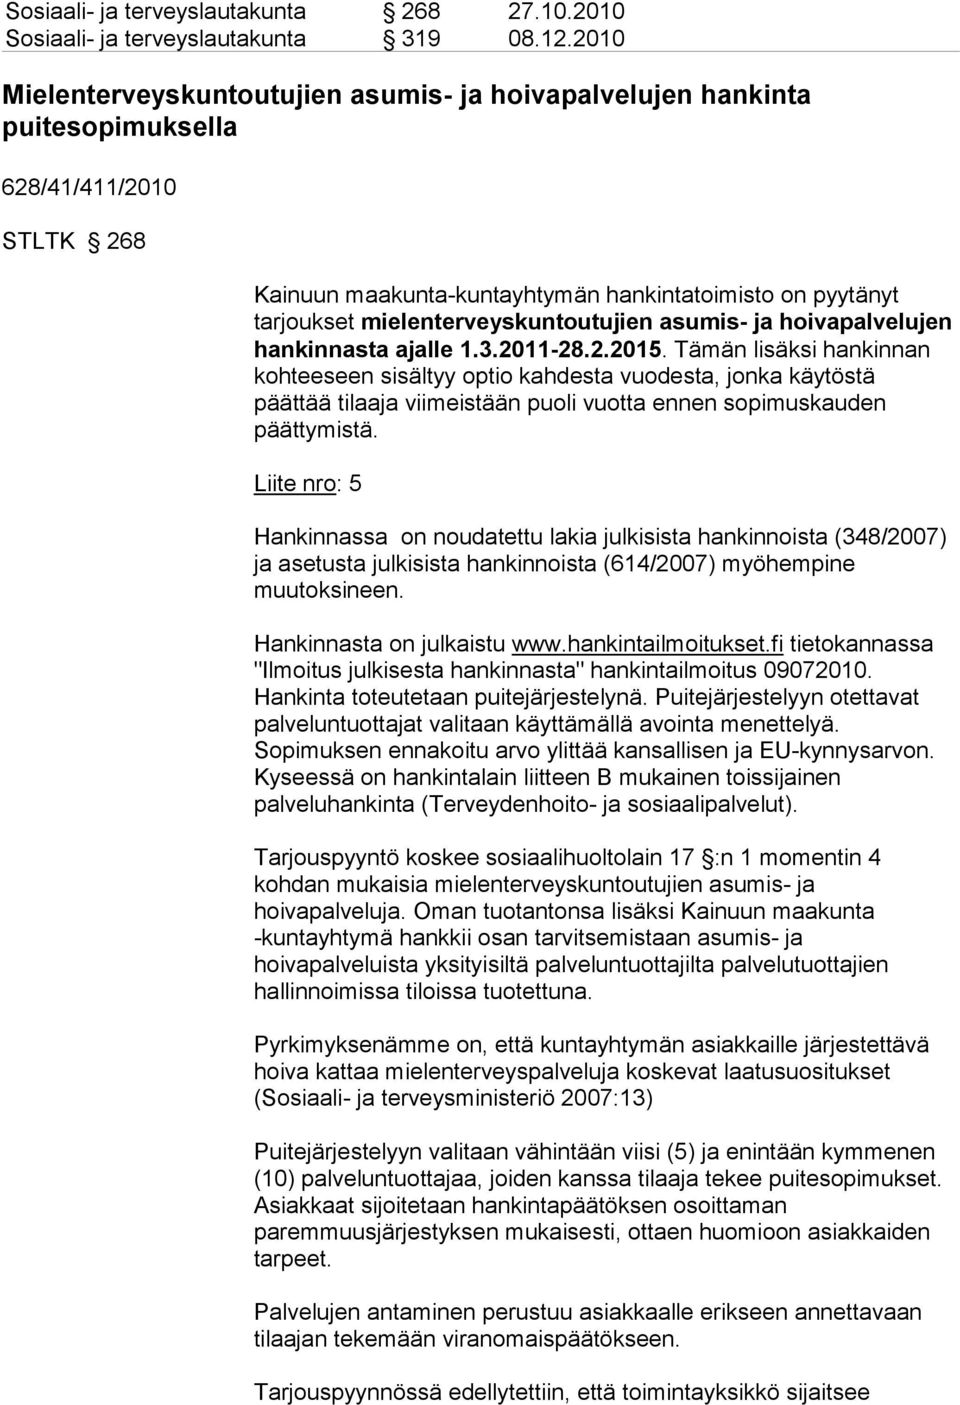 mielenterveyskuntoutujien asumis- ja hoivapalvelujen hankinnasta ajalle 1.3.2011-28.2.2015.